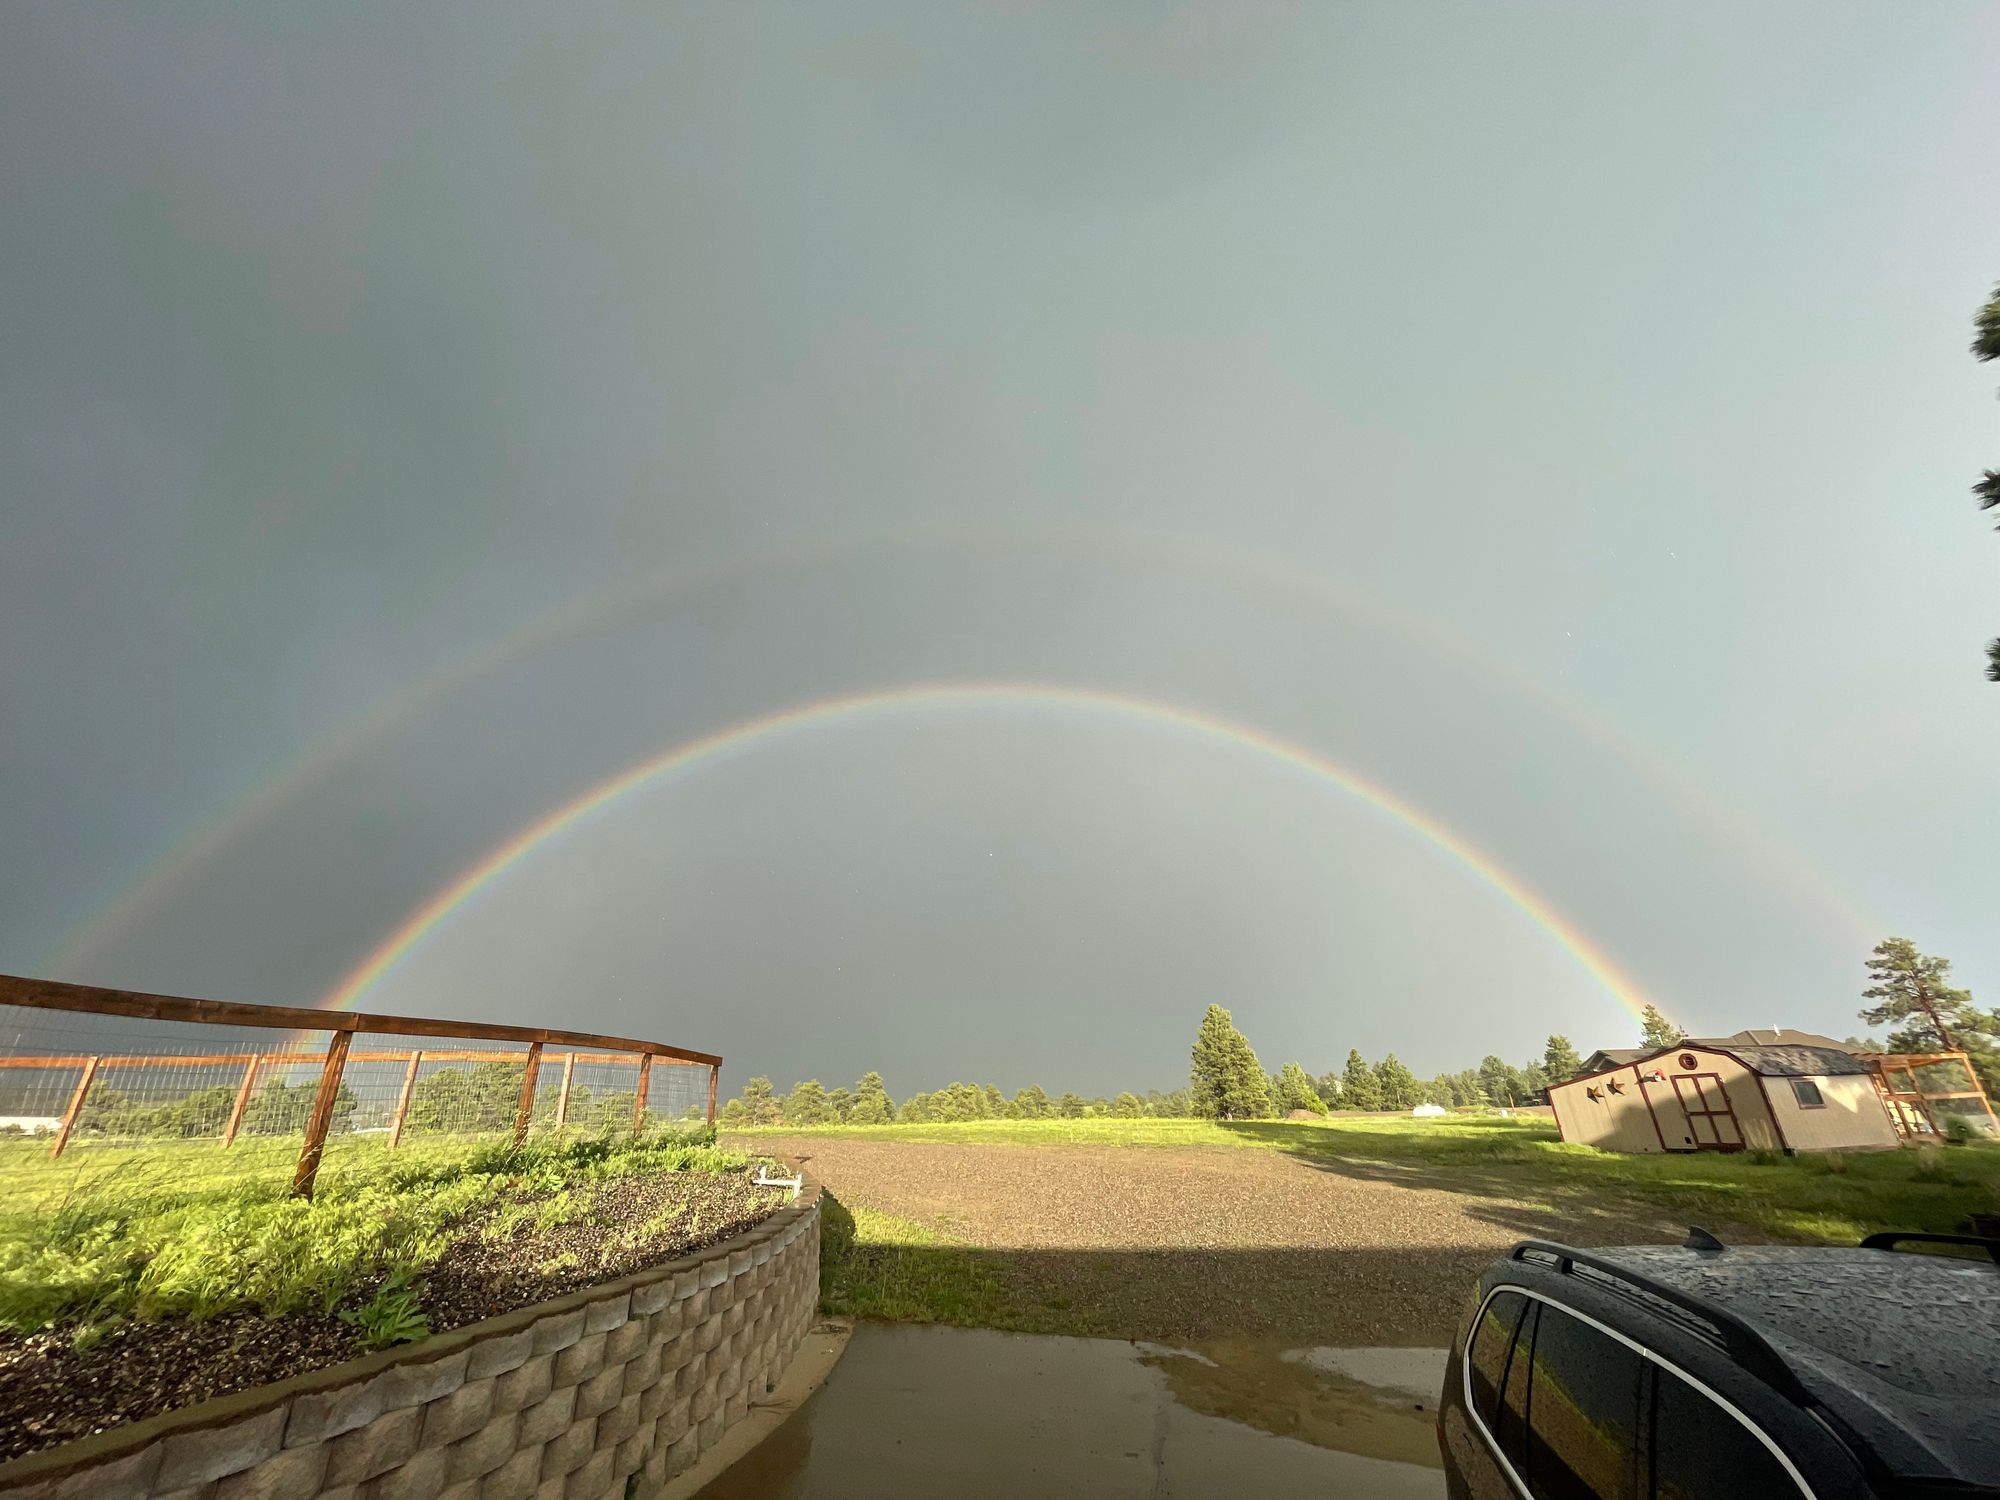 A double rainbow arches over a farm property